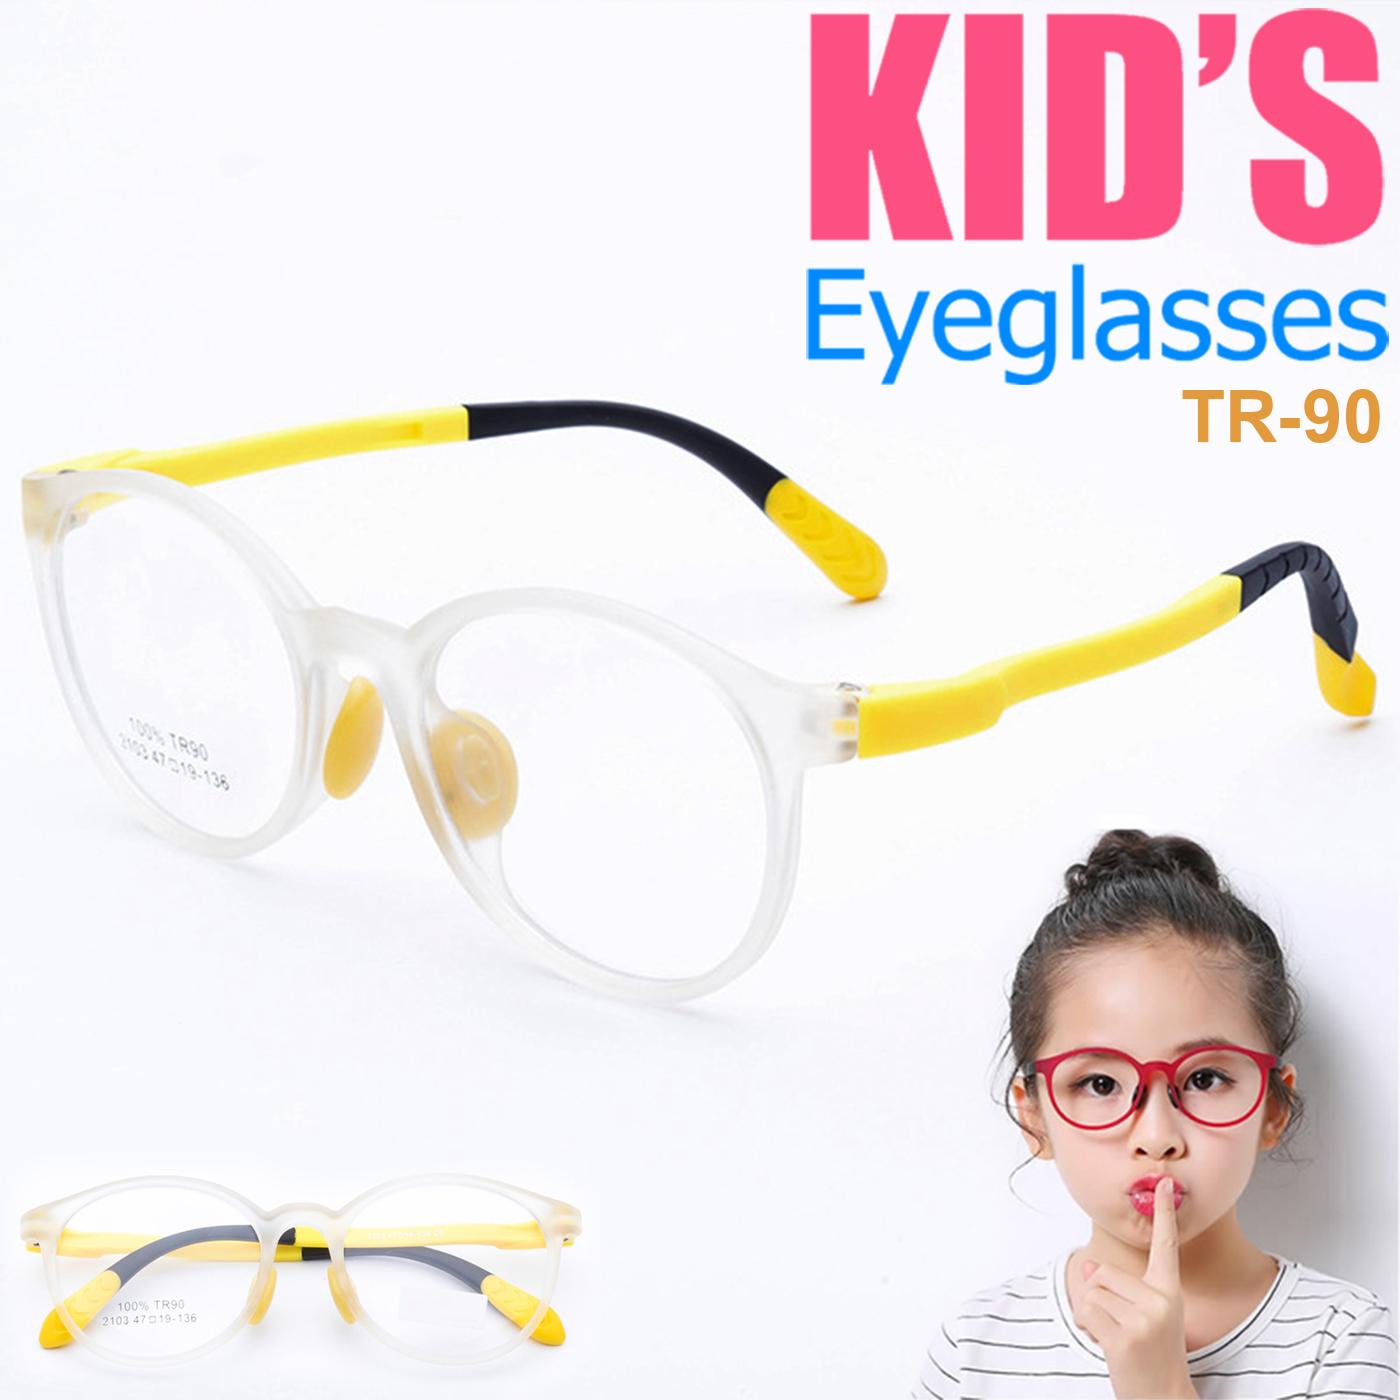 แว่นตาเกาหลีเด็ก Fashion Korea Children แว่นตาเด็ก รุ่น 2103 C-5 กรอบใสขาเหลือง กรอบแว่นตาเด็ก Round ทรงกลม Eyeglass baby frame ( สำหรับตัดเลนส์ ) วัสดุ TR-90 เบาและยืดหยุนได้สูง ขาข้อต่อ Kid eyewear Glasses